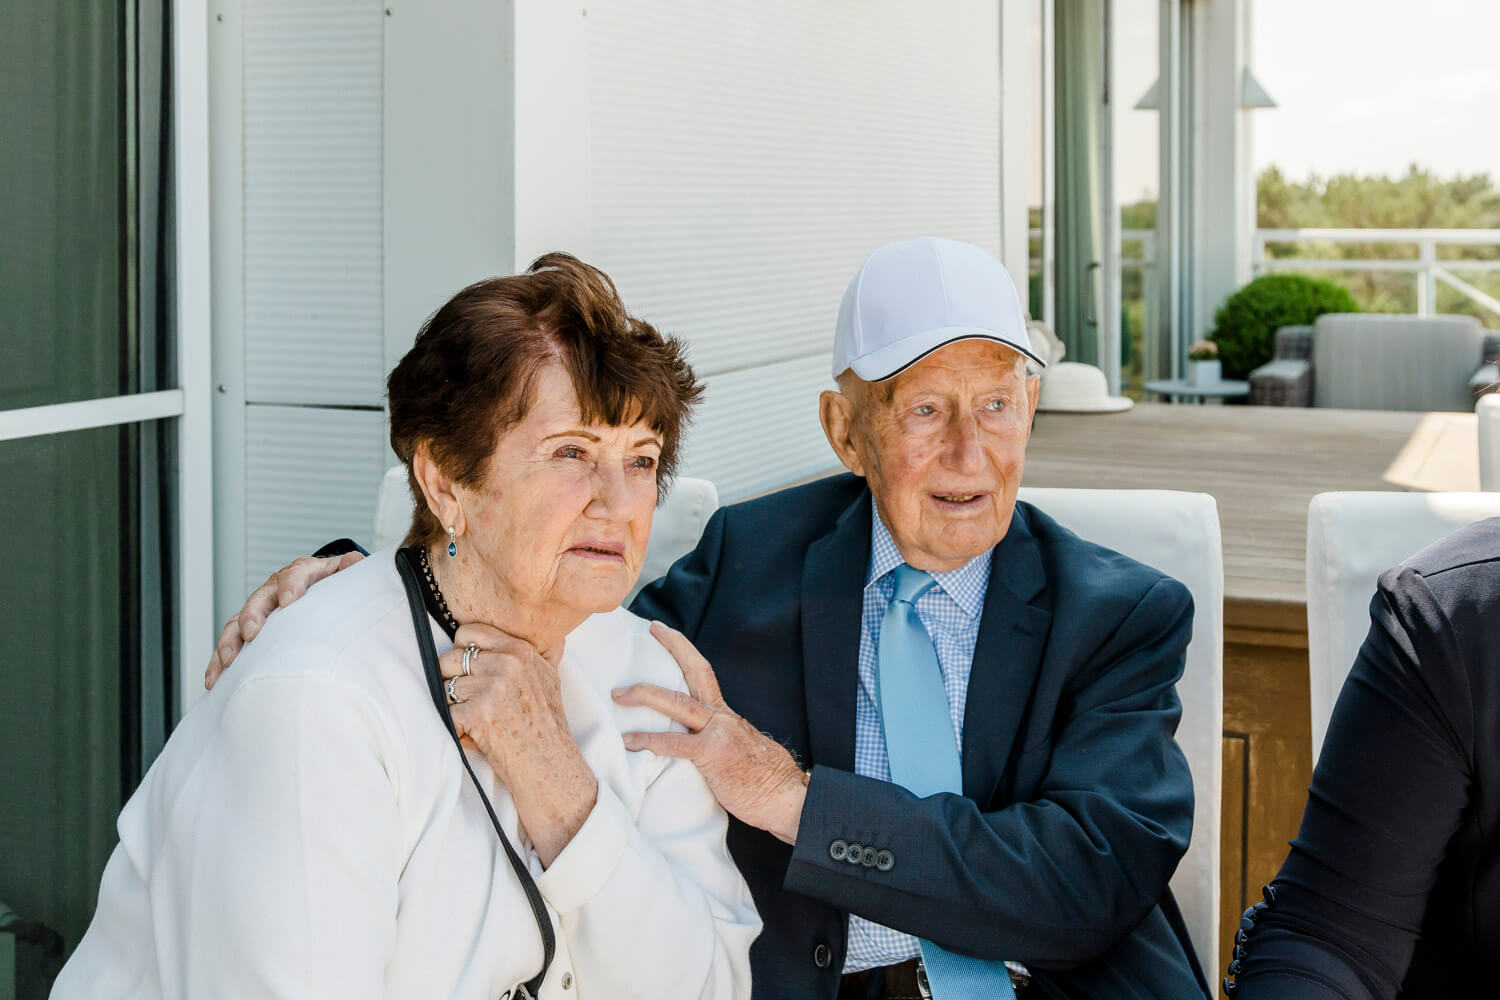 Hochzeitsreportage. Hochzeitsgäste während der Trauung. Oma und Opa sind ganz gerührt.